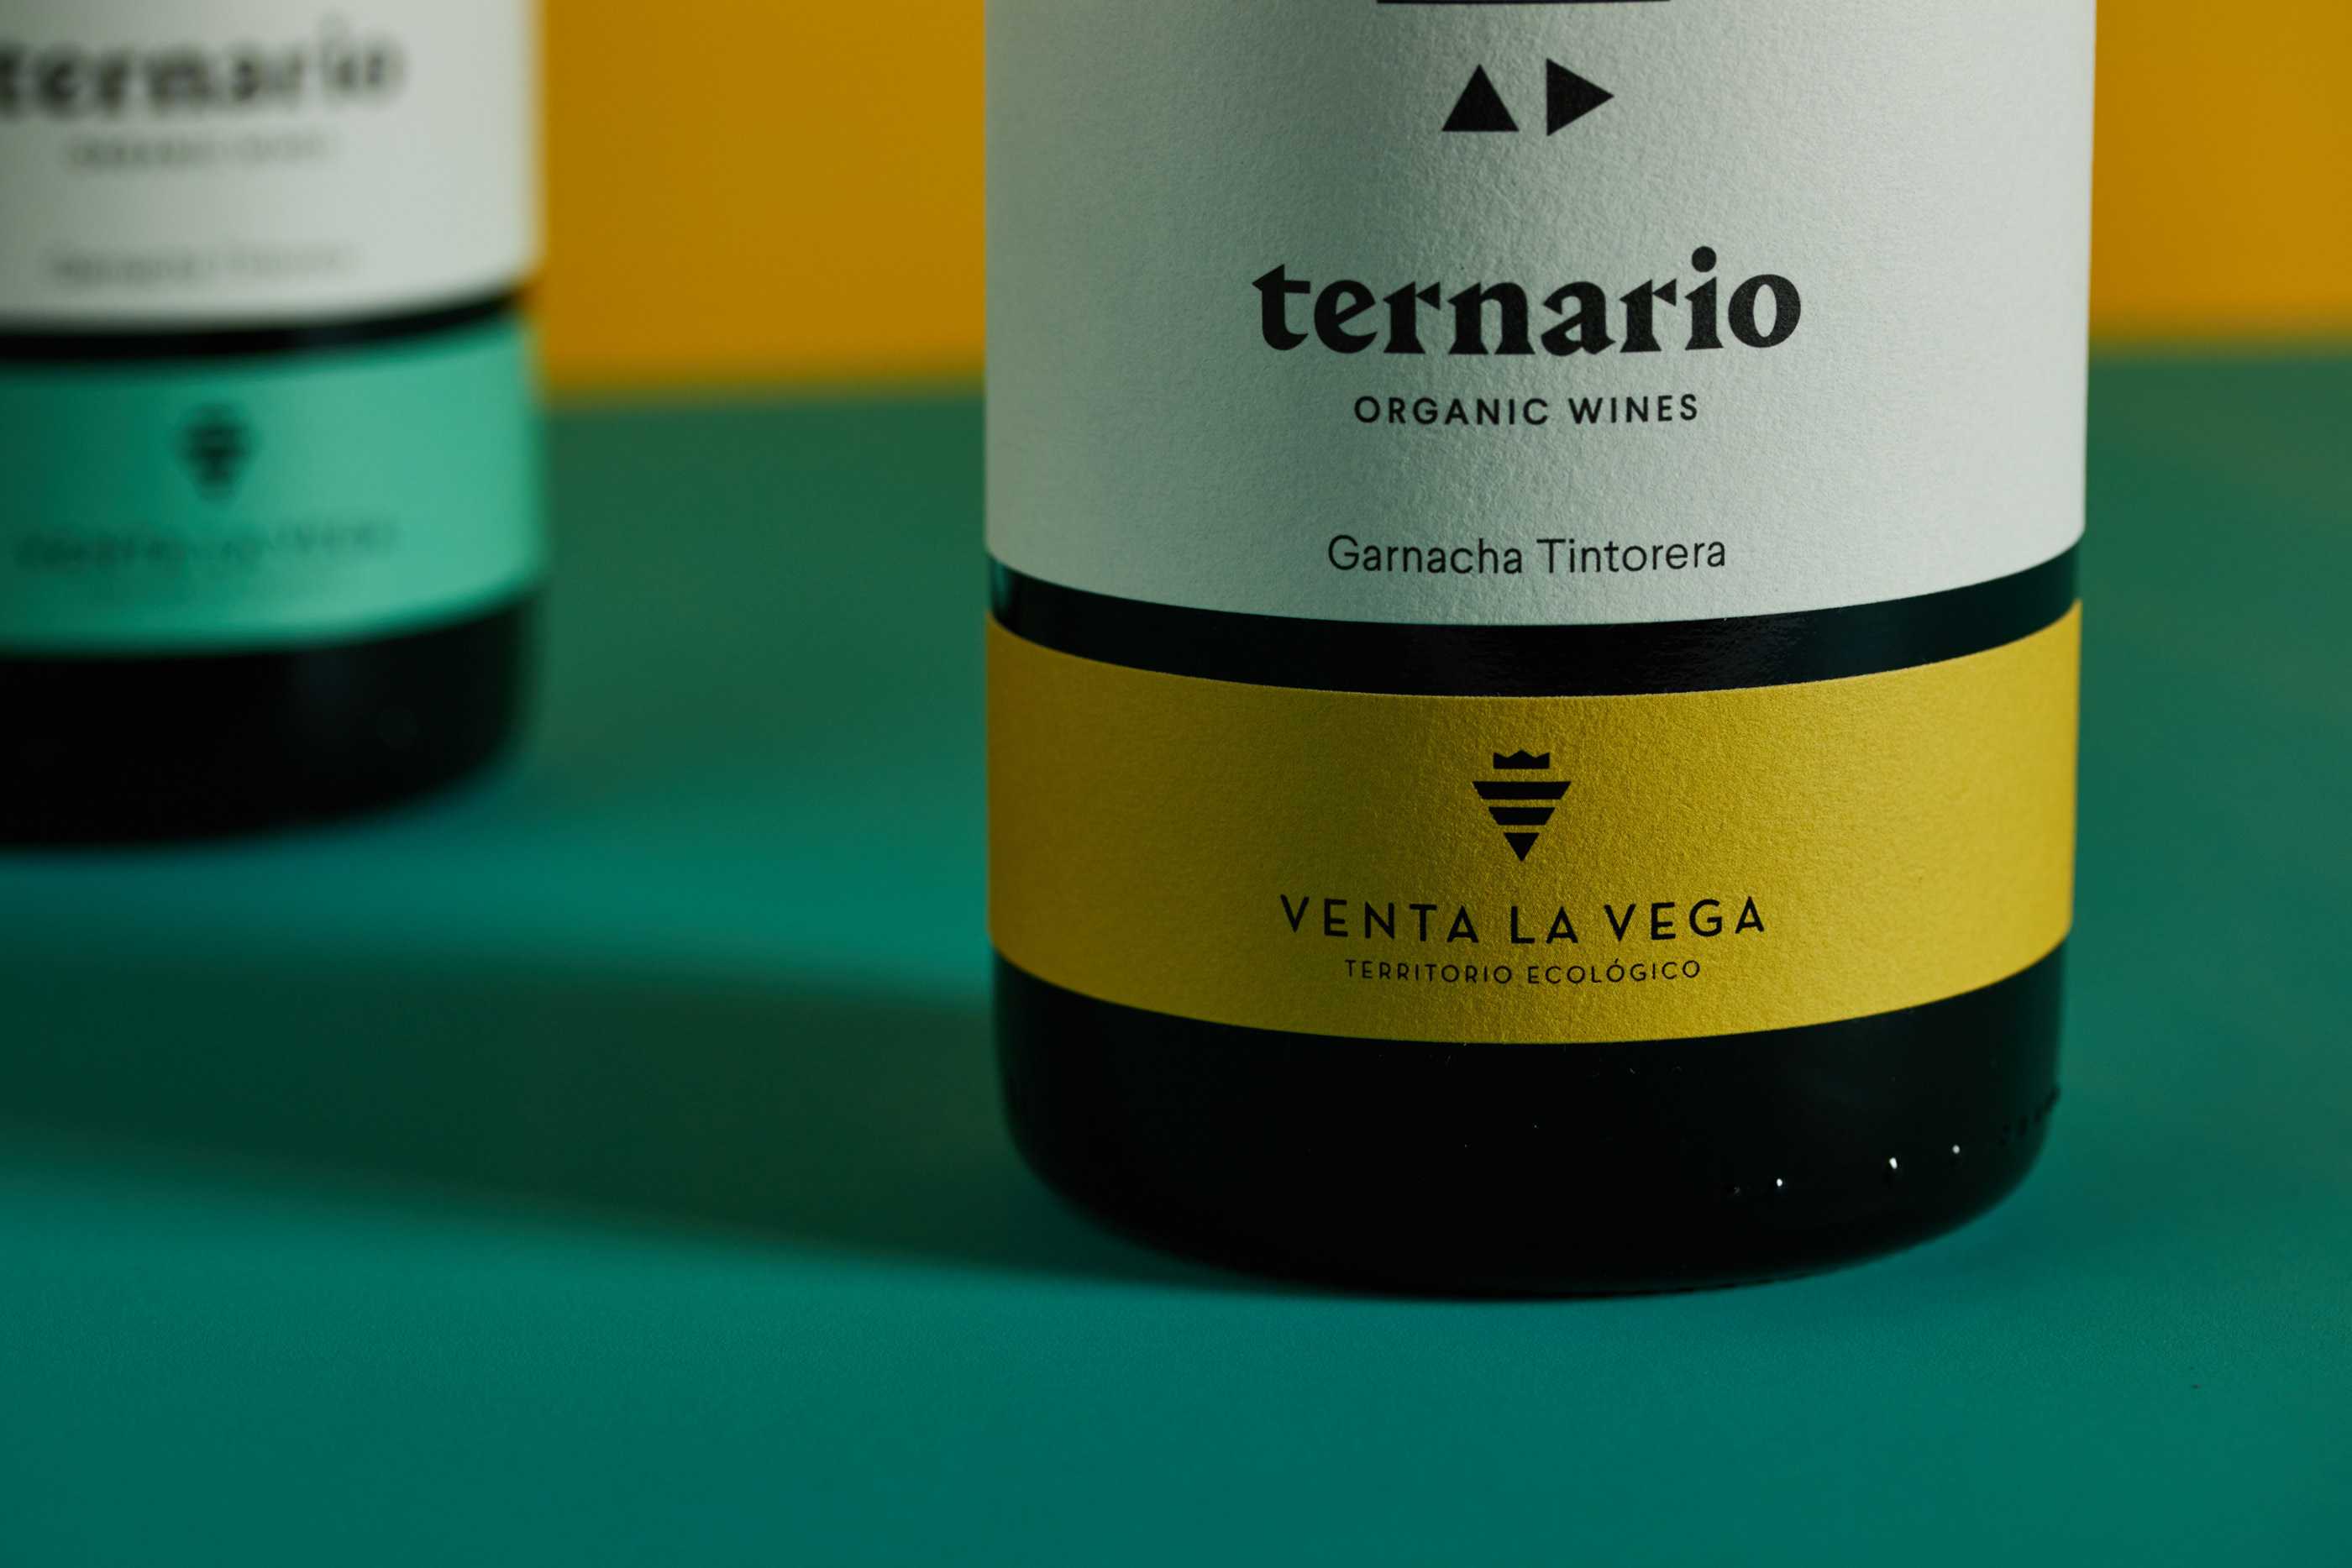 Diseño de etiqueta para familia de vinos venta la vega